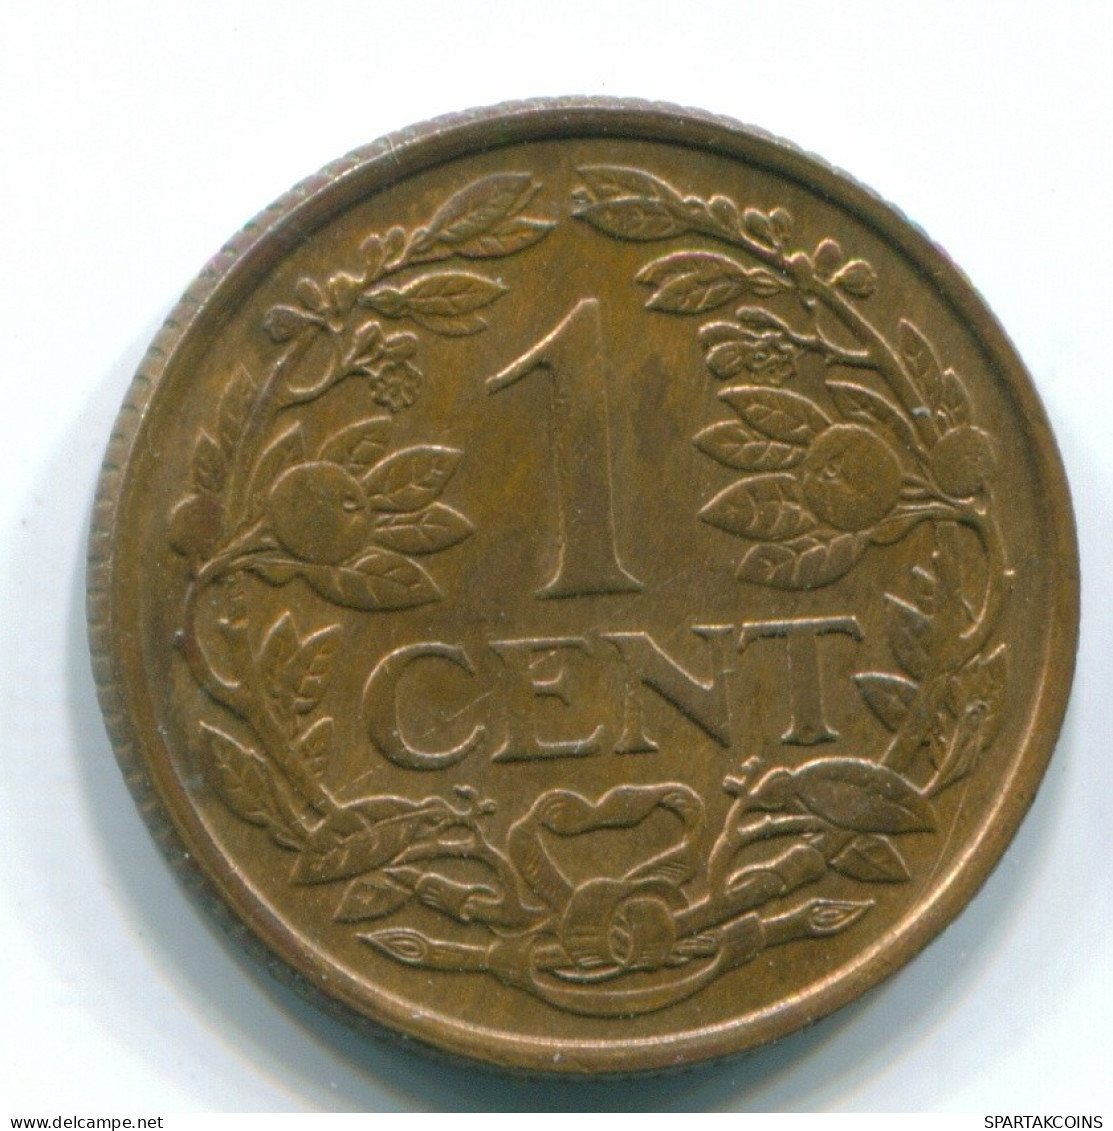 1 CENT 1967 NIEDERLÄNDISCHE ANTILLEN Bronze Fish Koloniale Münze #S11130.D.A - Antille Olandesi